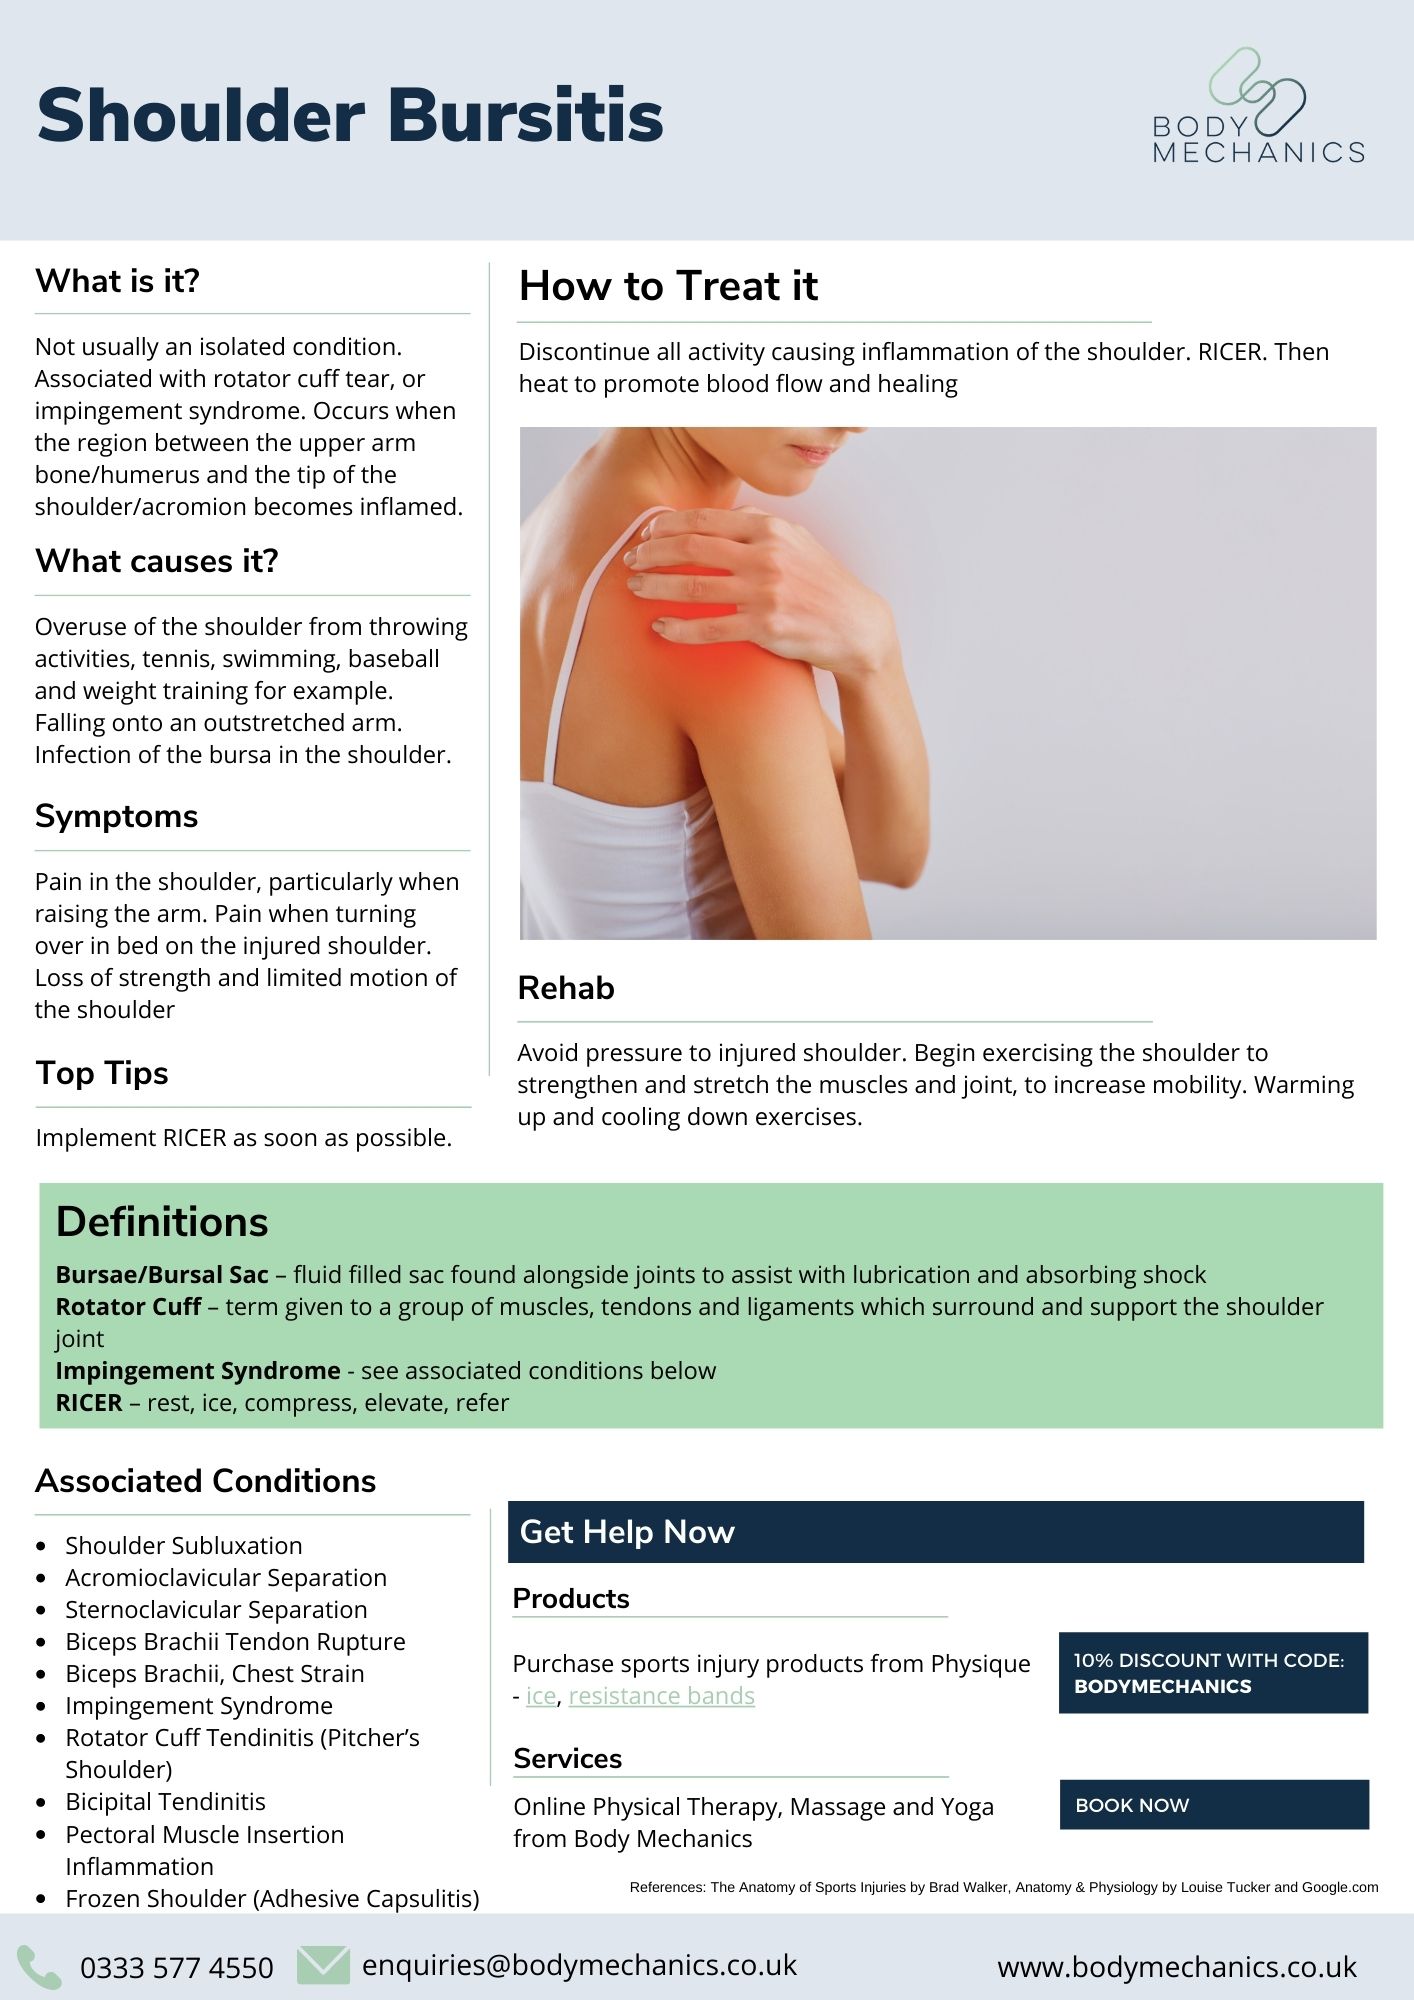 Shoulder Bursitis Infosheet